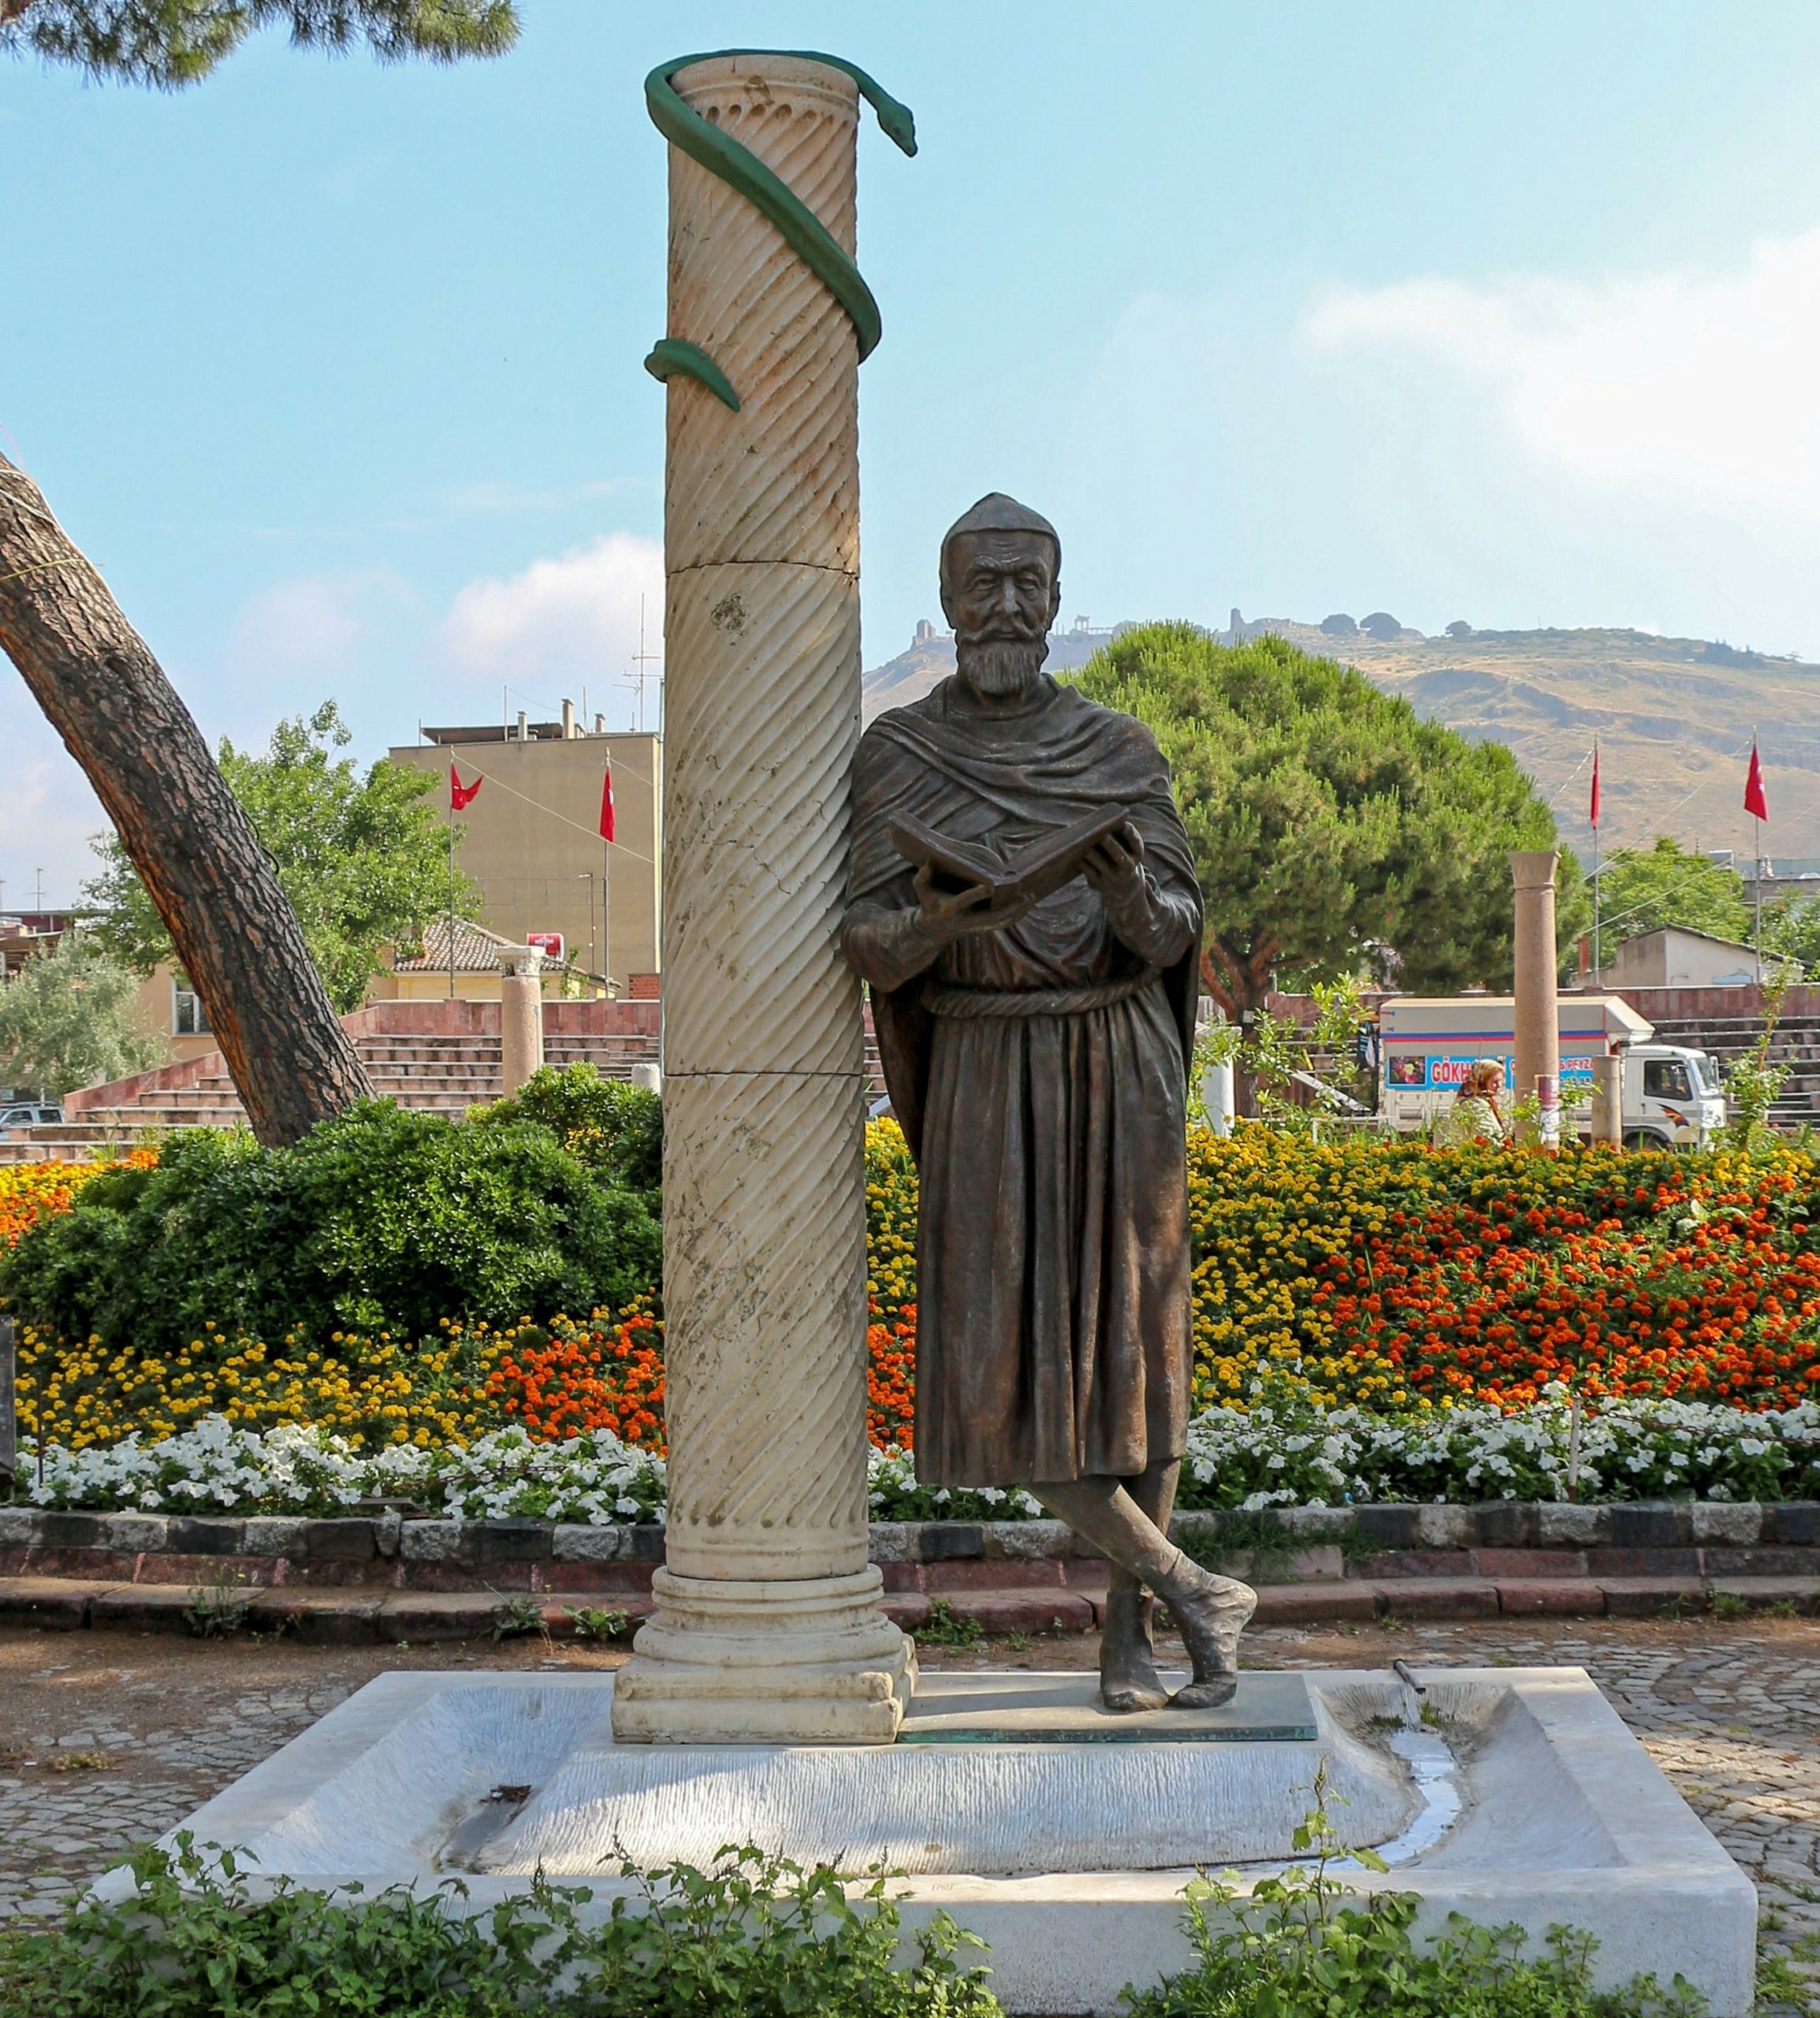 تمثال لجالينوس في مسقط رأسه بمدينة بيرغاموم/ وكيبيديا